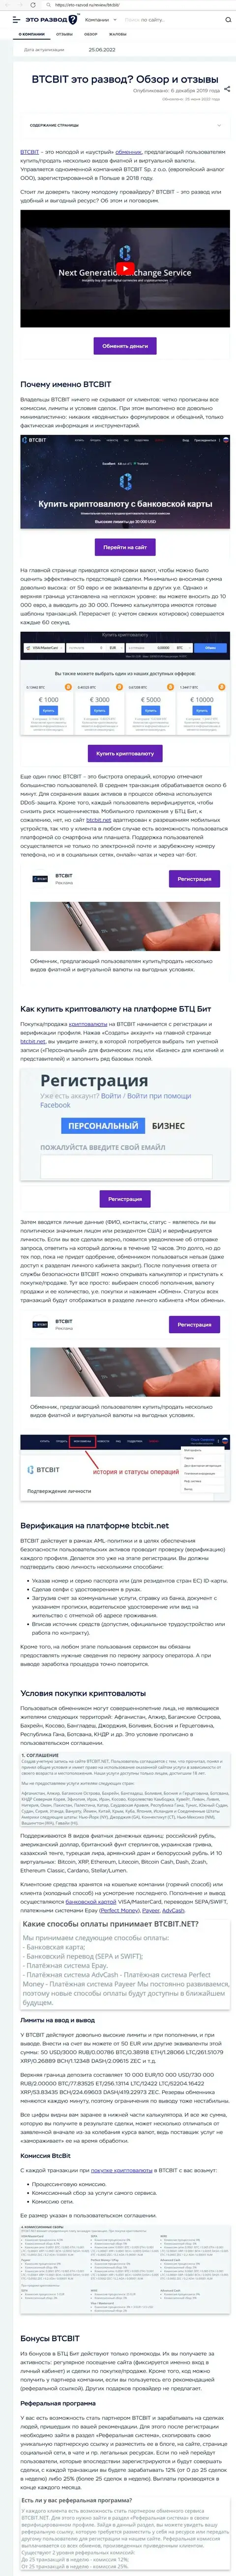 Анализ деятельности и условия для предоставления услуг онлайн обменки BTCBit Net в публикации на сайте Eto Razvod Ru